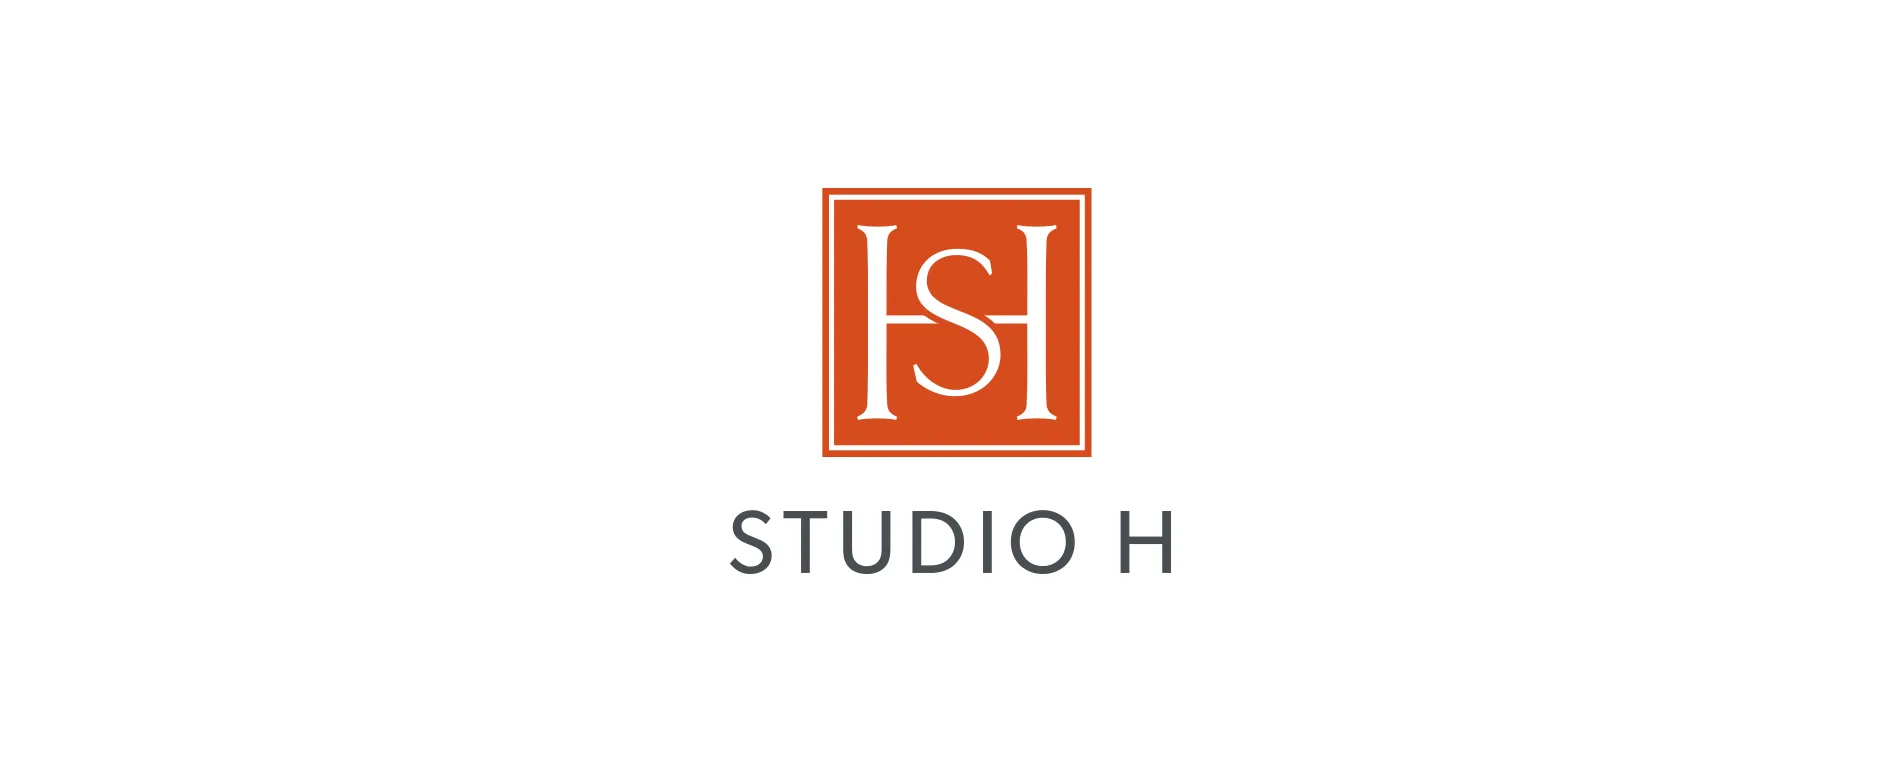 Studio H Interior business logo design